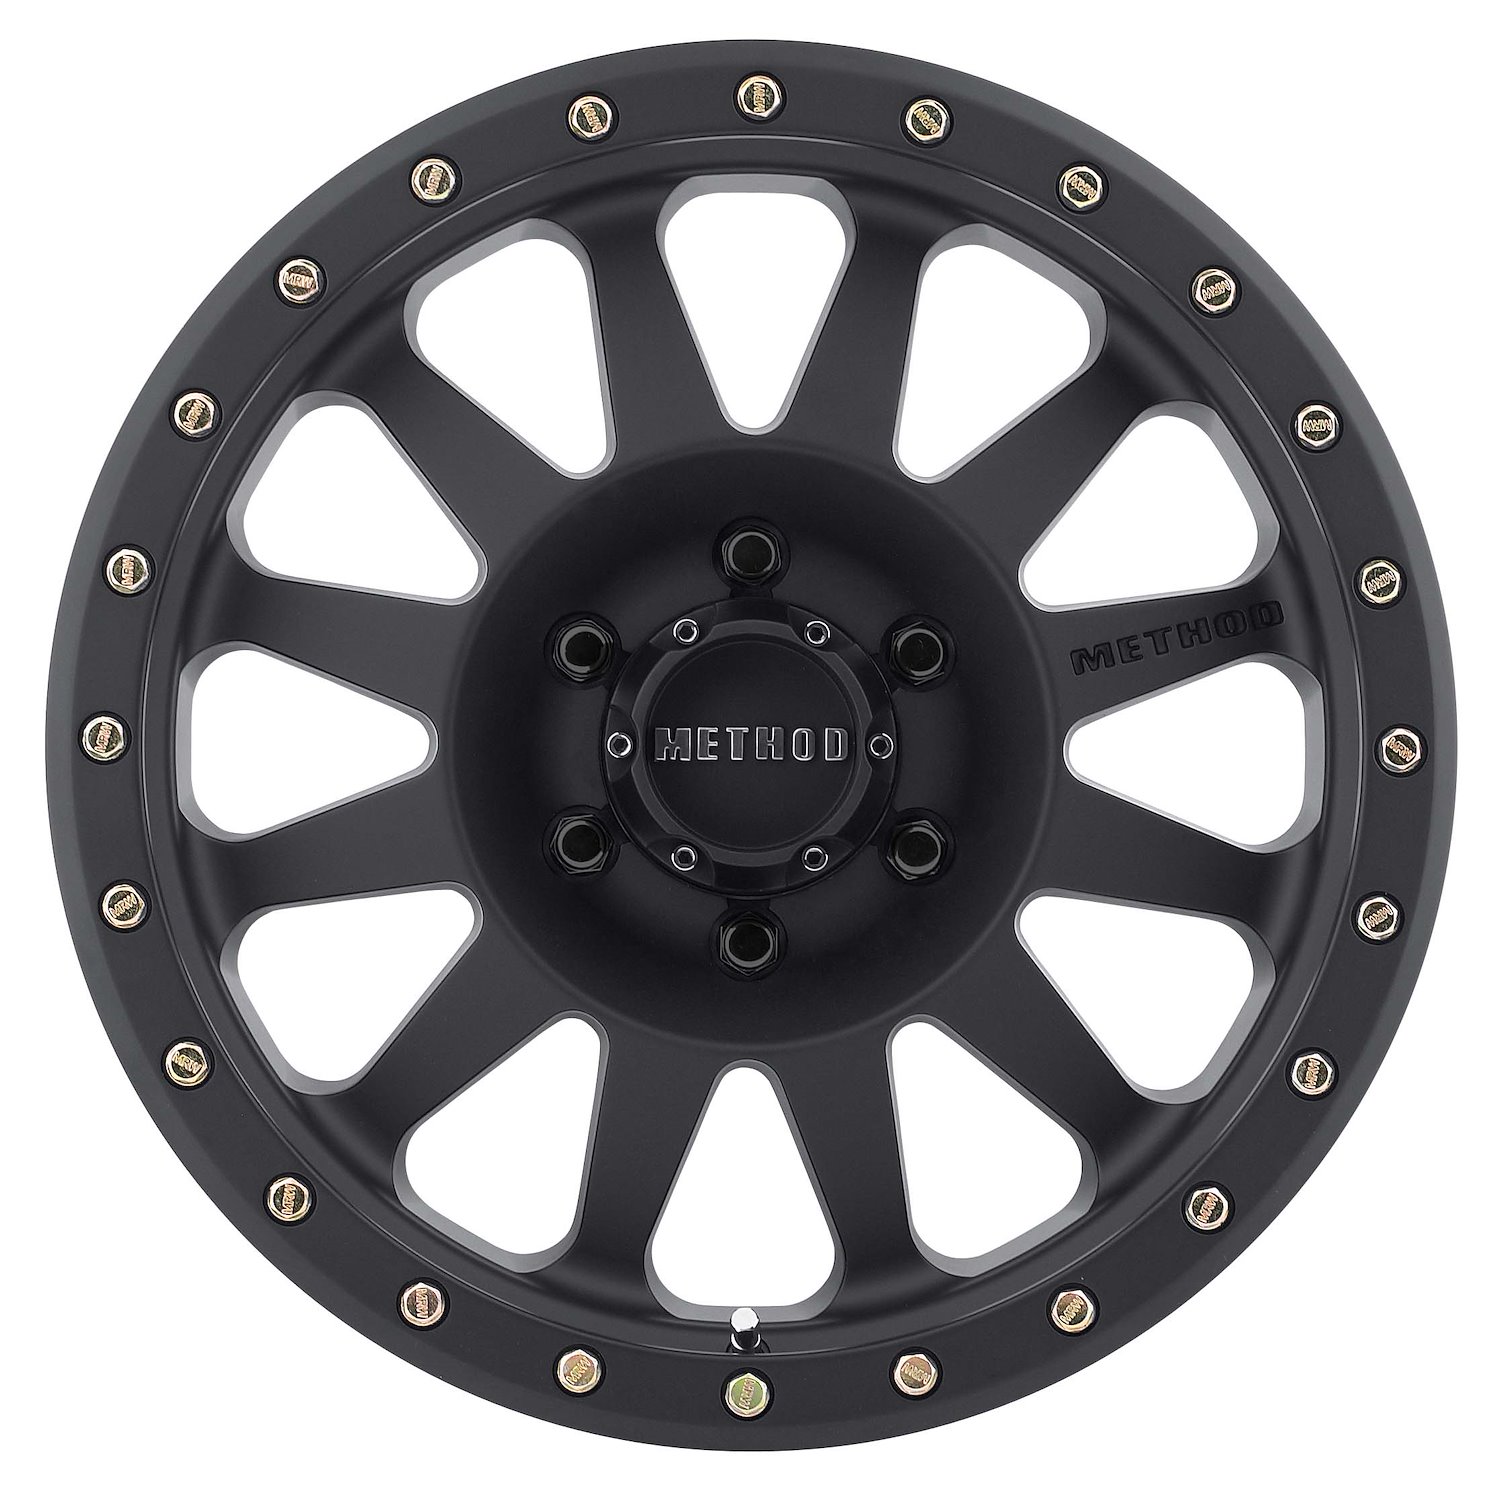 MR30478516500 STREET MR304 Double Standard Wheel [Size: 17" x 8.5"] Matte Black